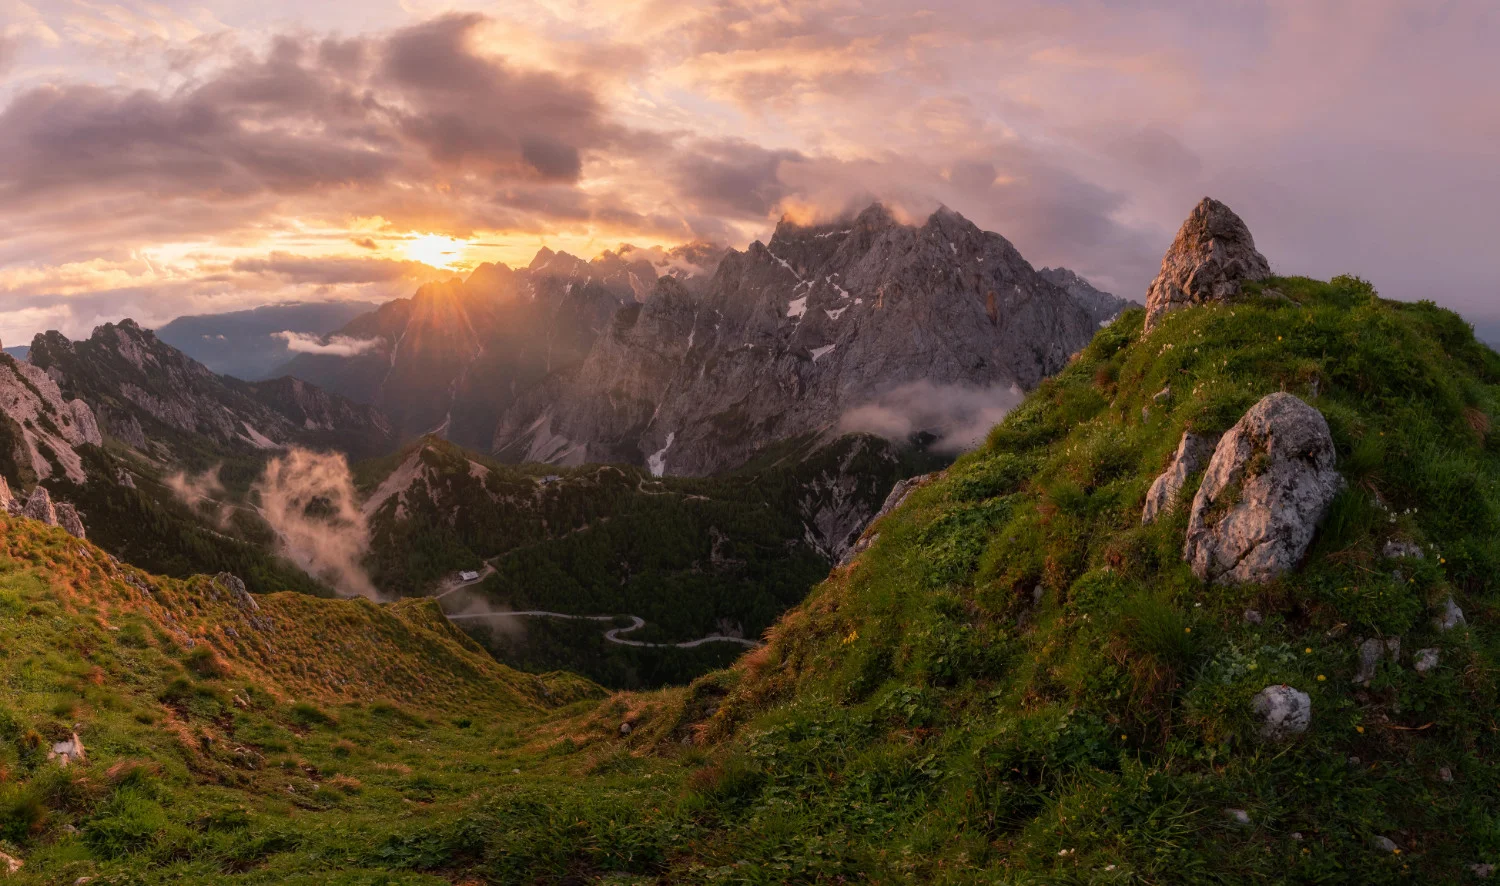 Peisaj montan cu un drum sinuos în depărtare - Alpii Iulieni